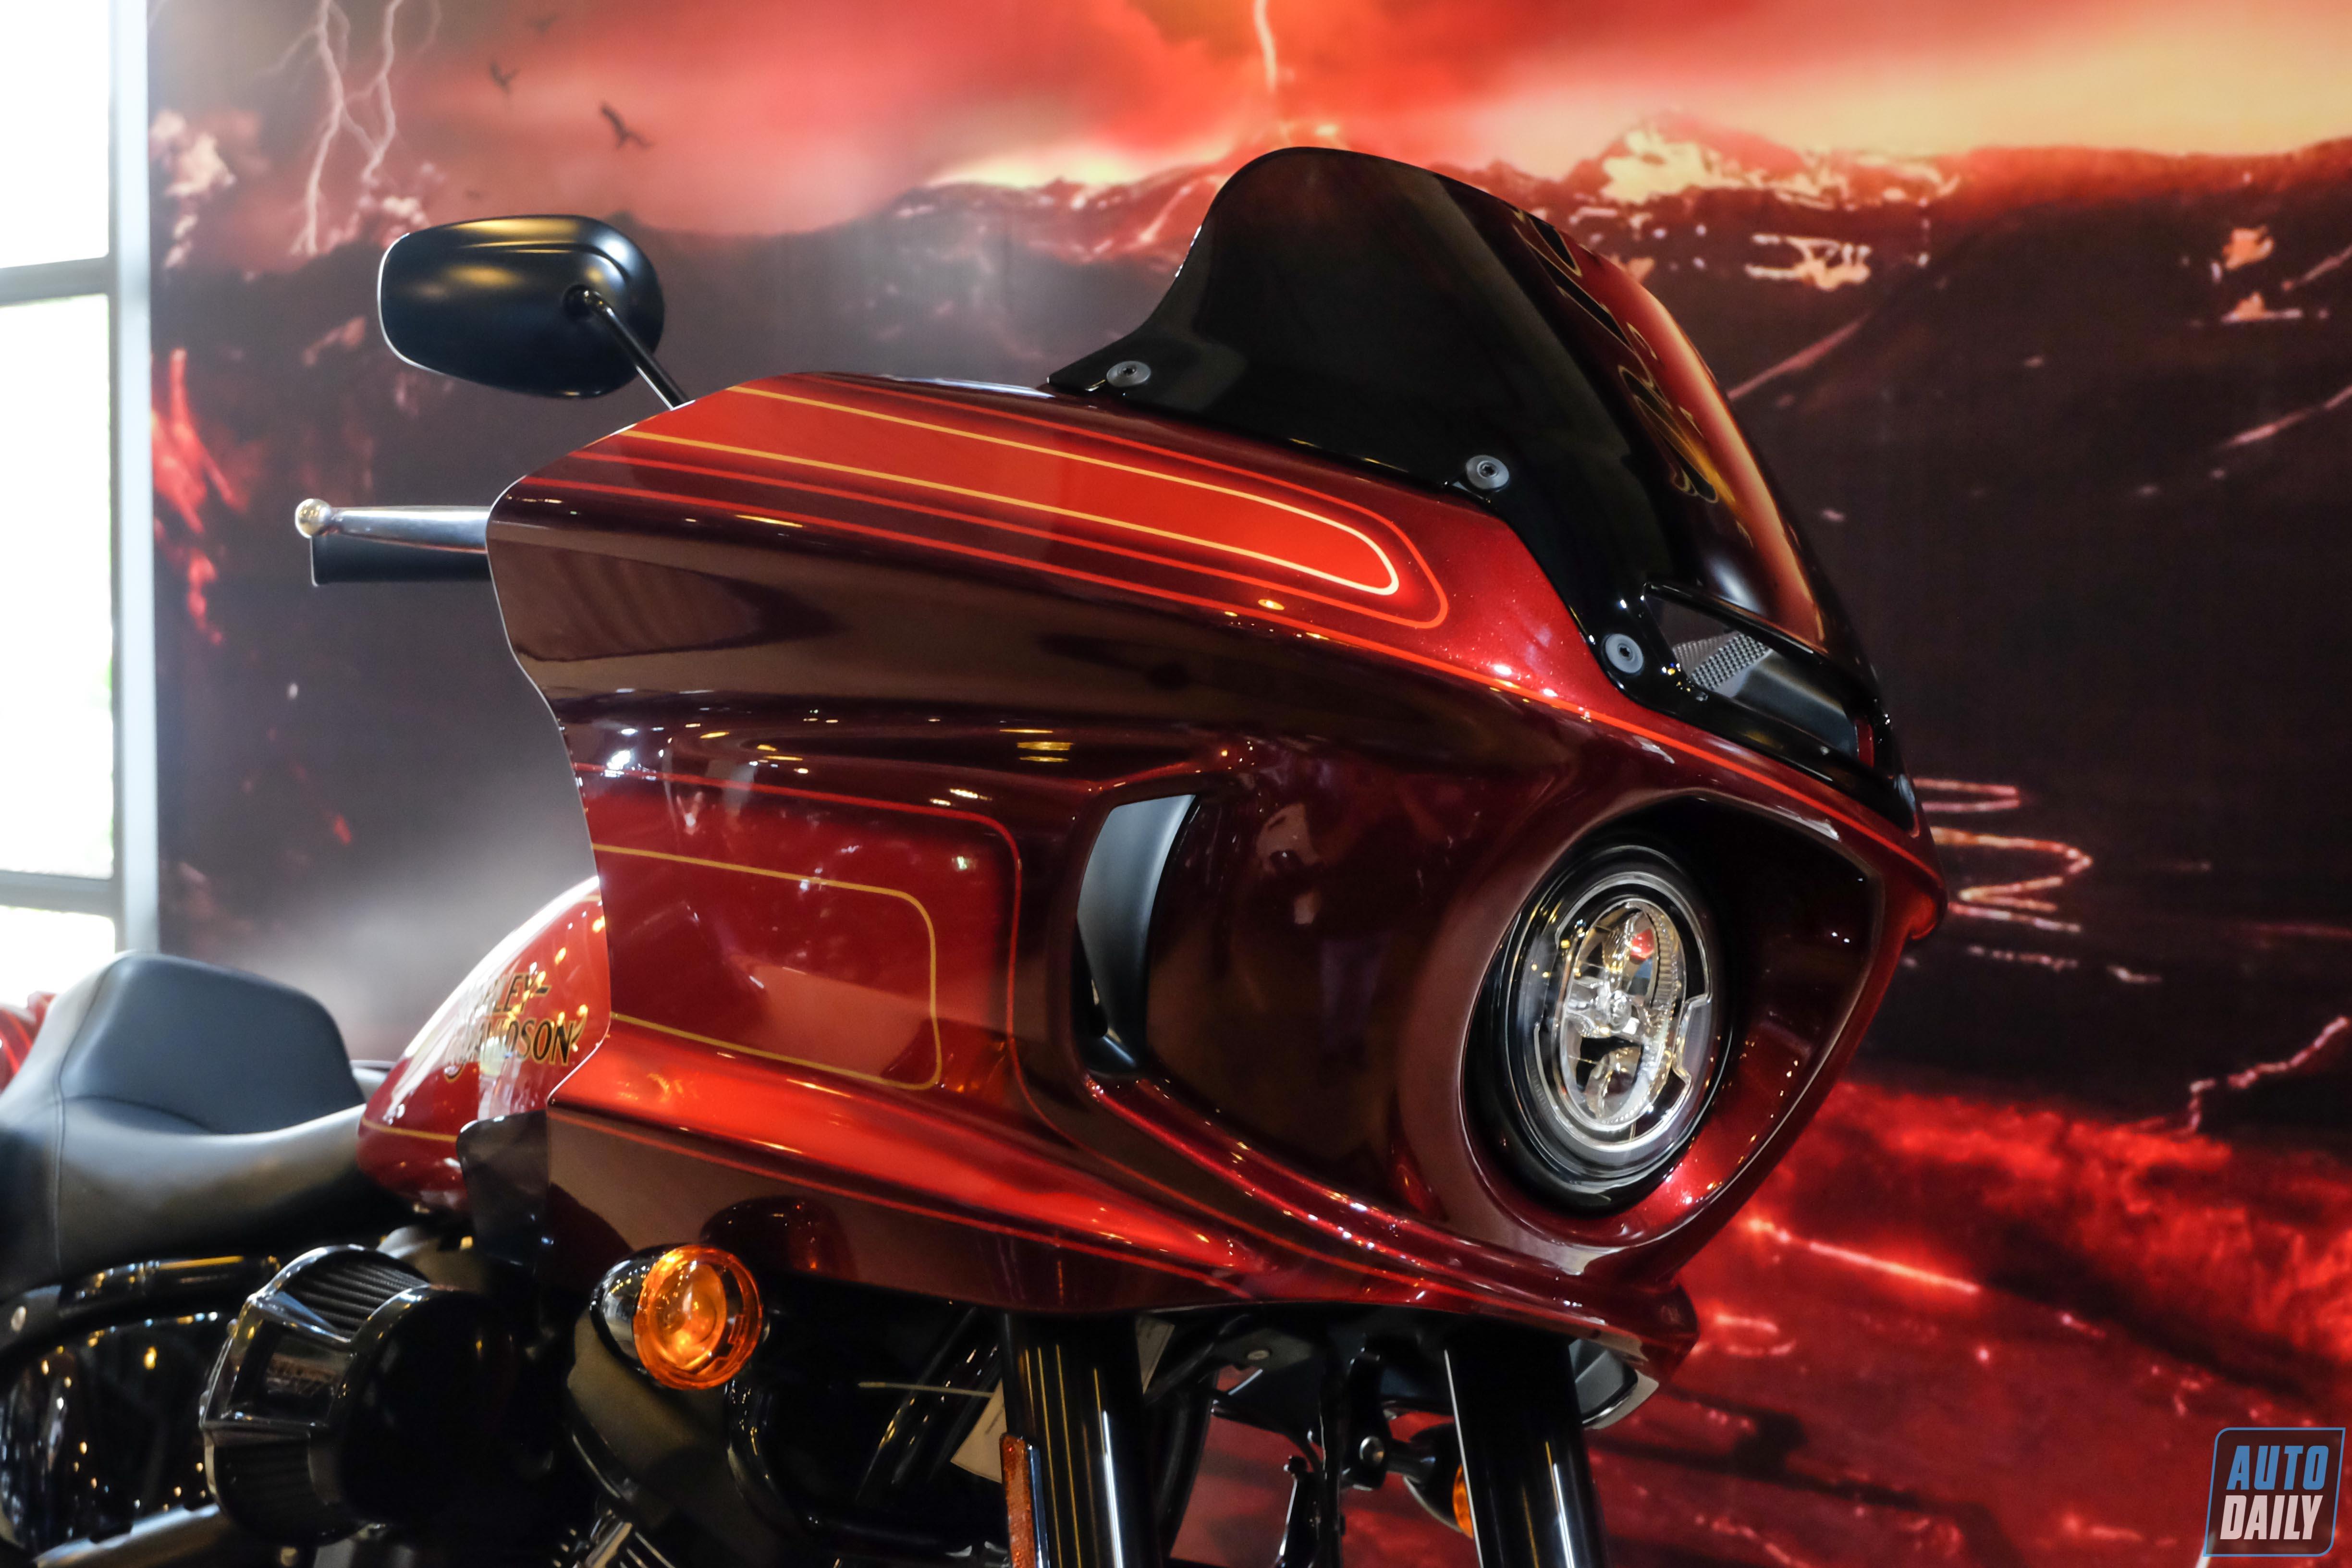 Cận cảnh Harley-Davidson Low Rider El Diablo đầu tiên tại Việt Nam Harley-Davidson Low Rider phiên bản giới hạn El Diablo (5).jpg